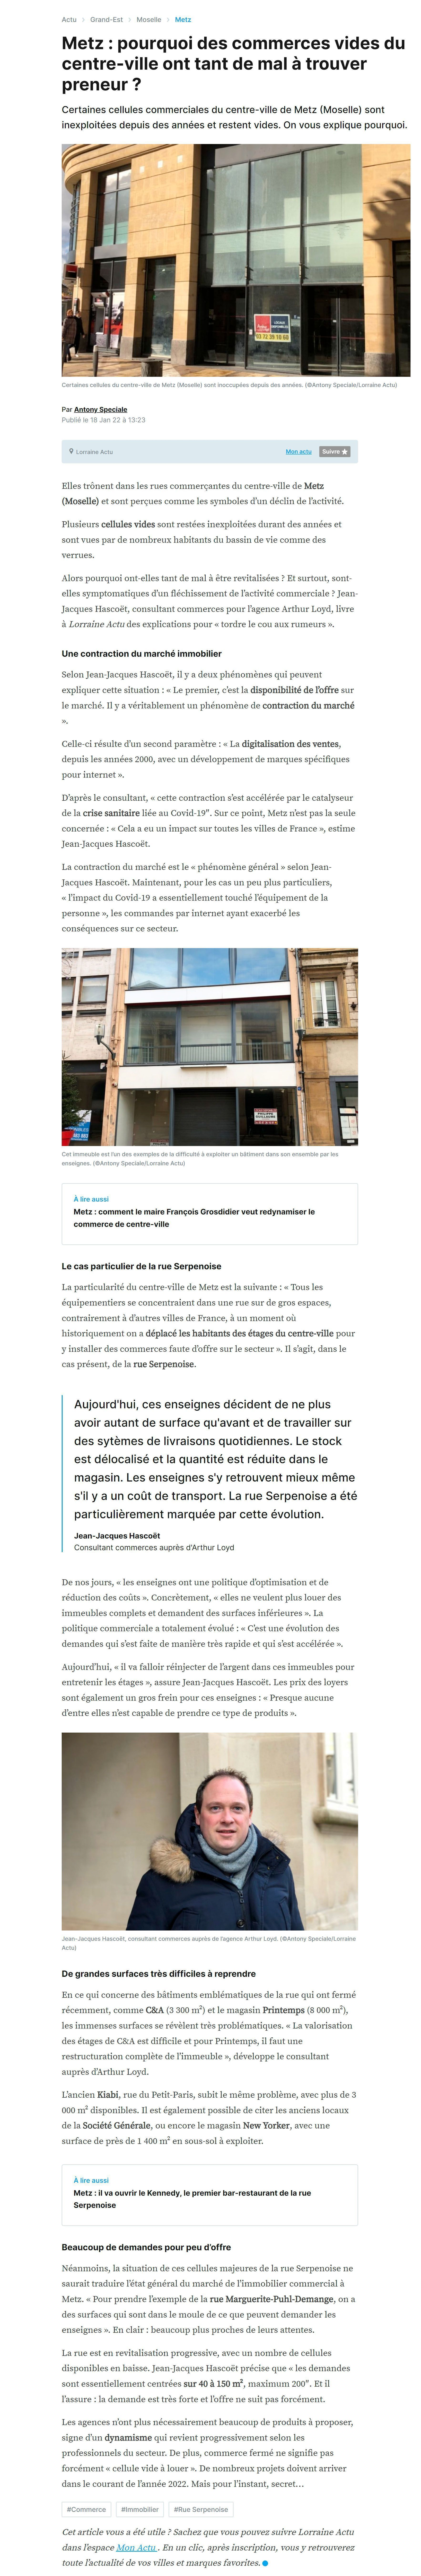 Article Lorraine ACTU - Interview Jean-Jacques HASCOËT